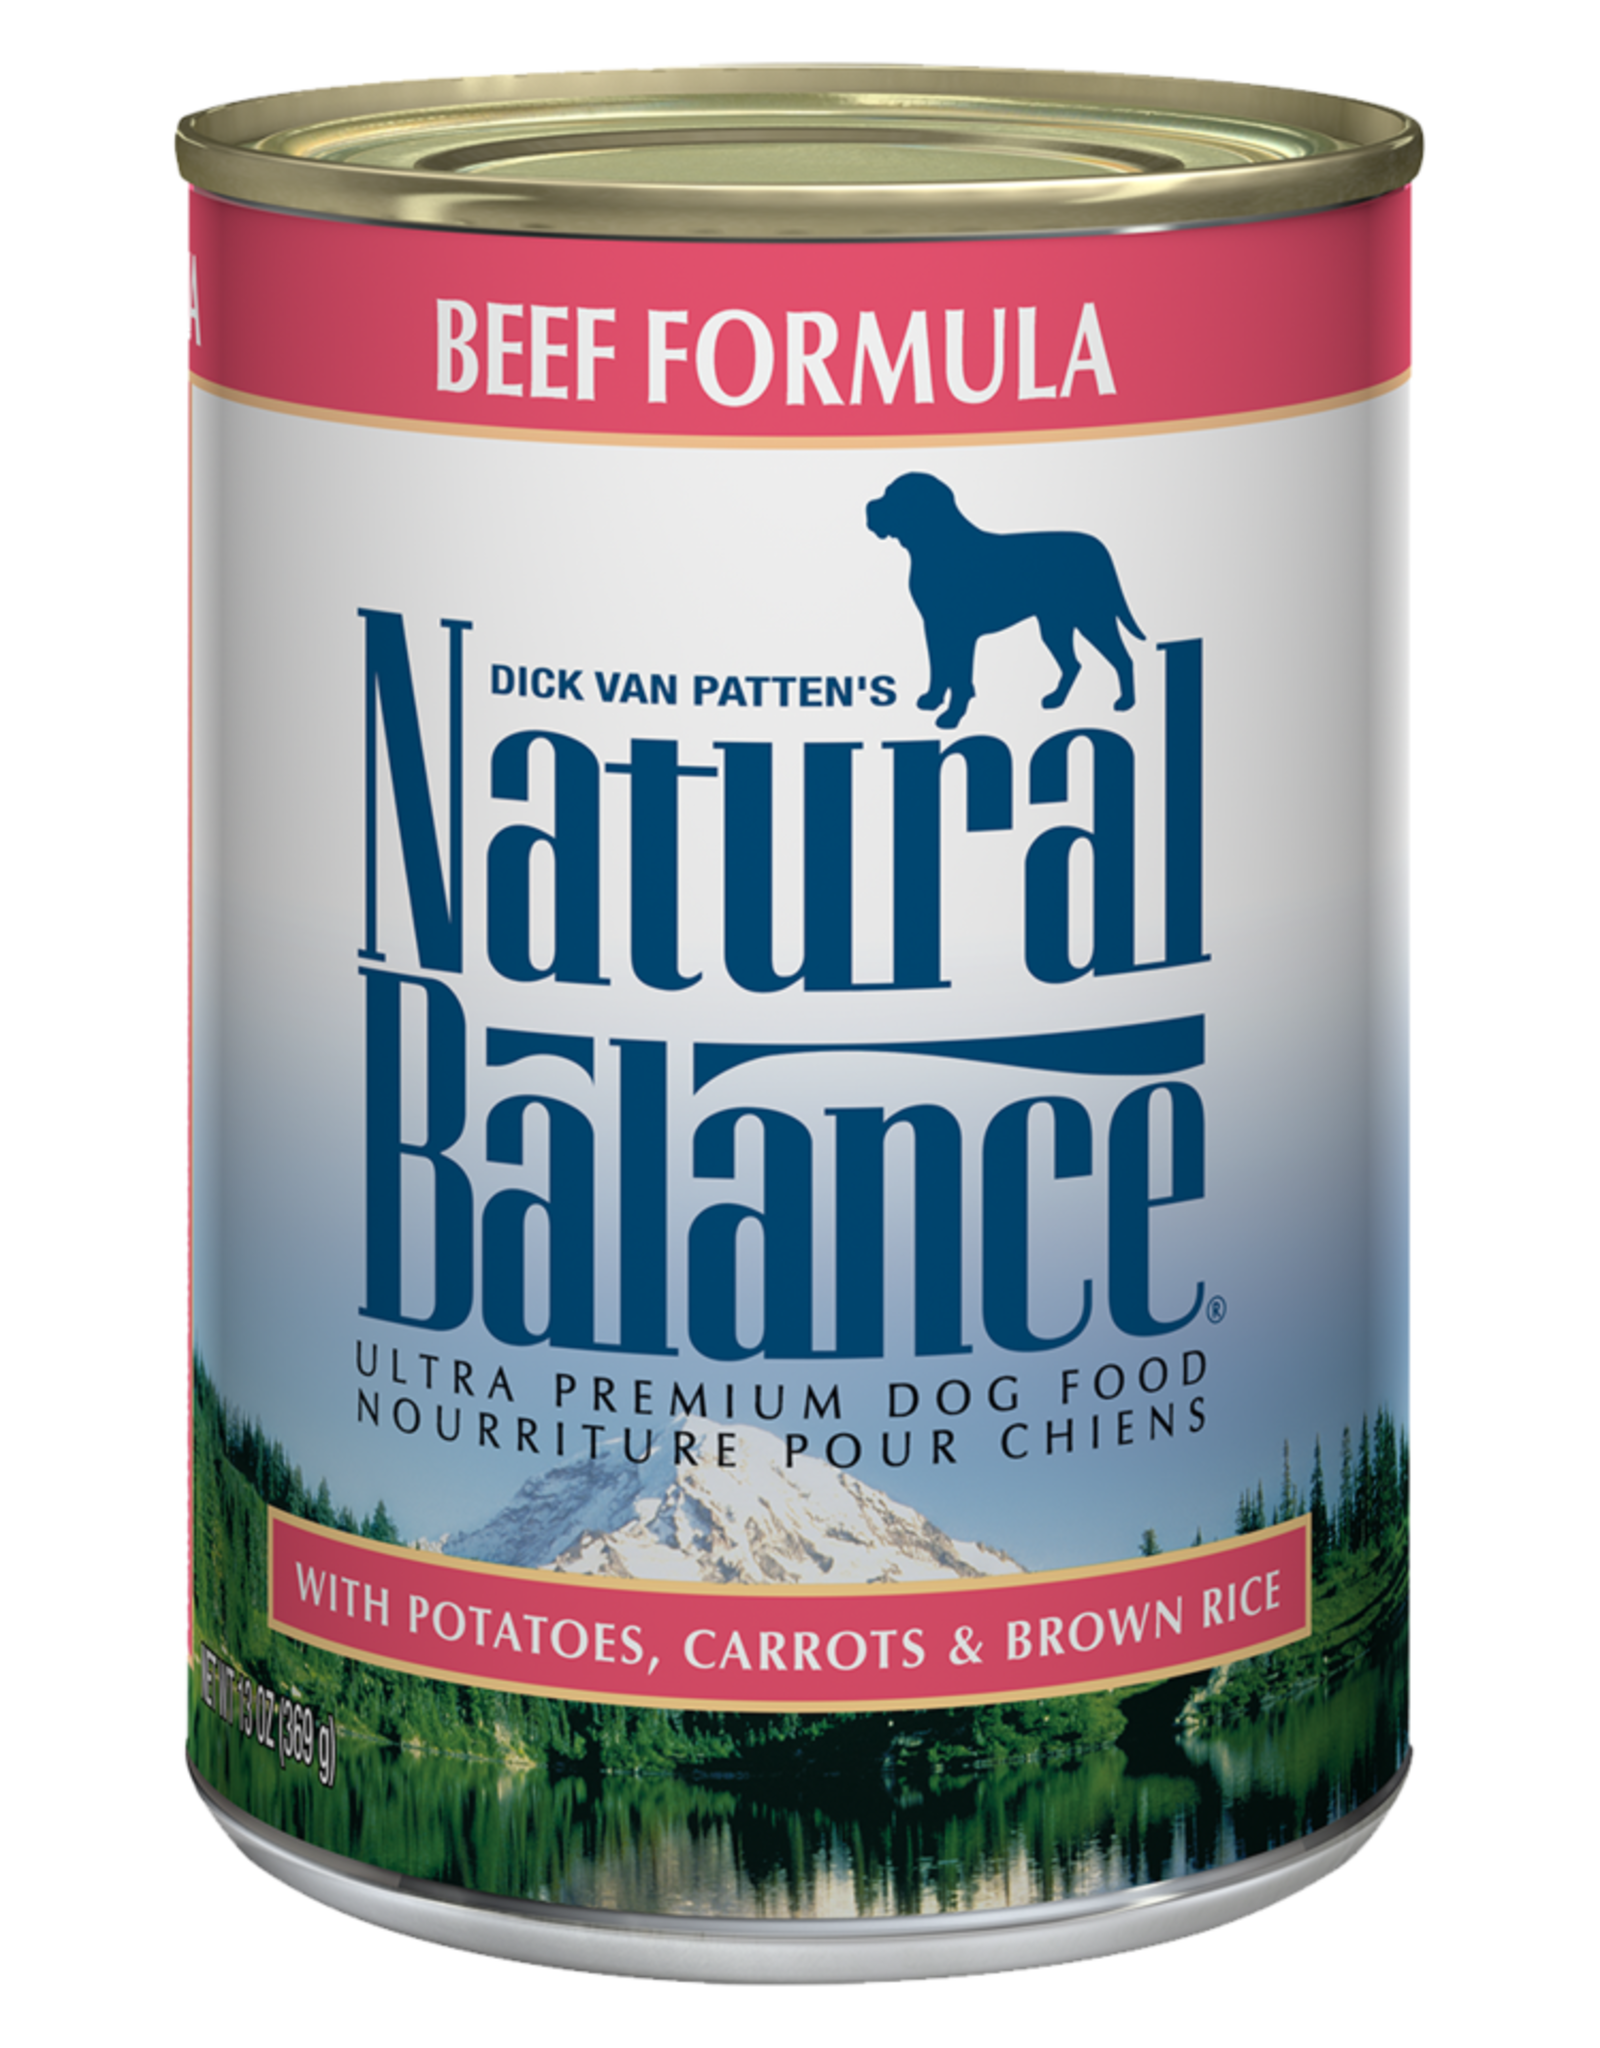 NATURAL BALANCE PET FOODS, INC NATURAL BALANCE DOG ULTRA BEEF RECIPE CAN 13OZ CASE OF 12